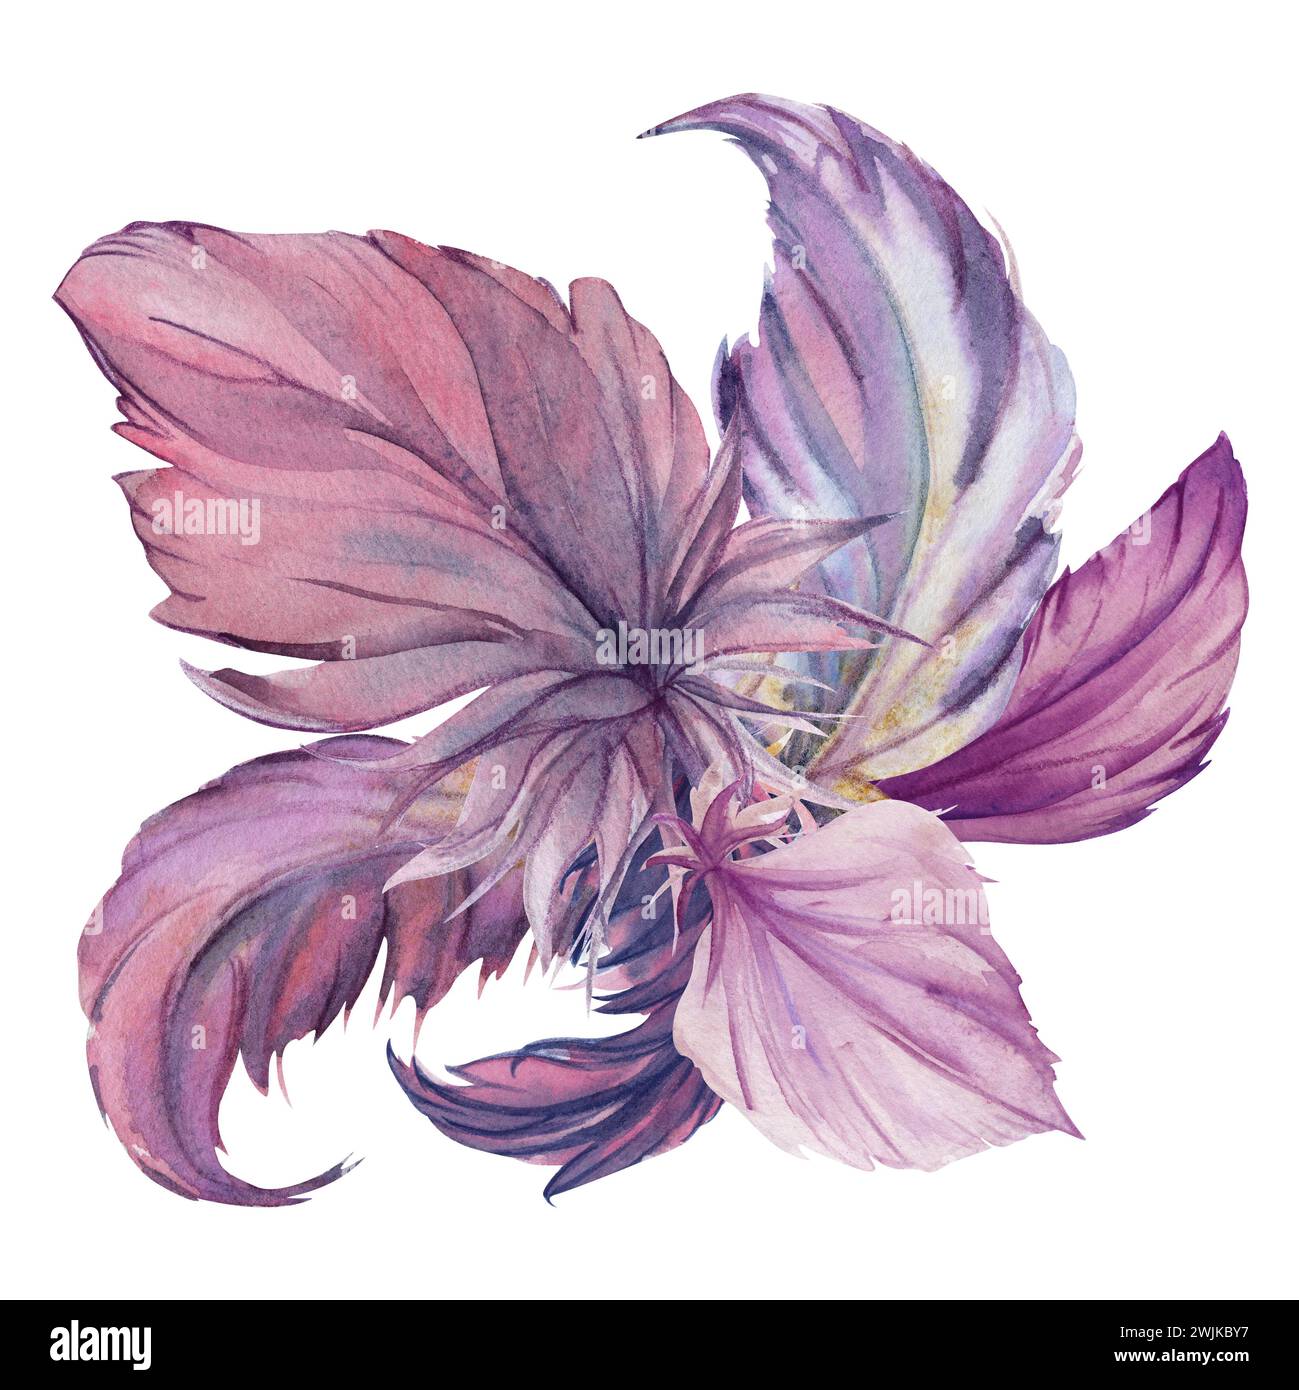 Aquarelle dessinée à la main plume d'oiseau plume plume Quill boho tribal ethnique indien violet. Composition isolée sur fond blanc. Design pour le charme, amulette Banque D'Images